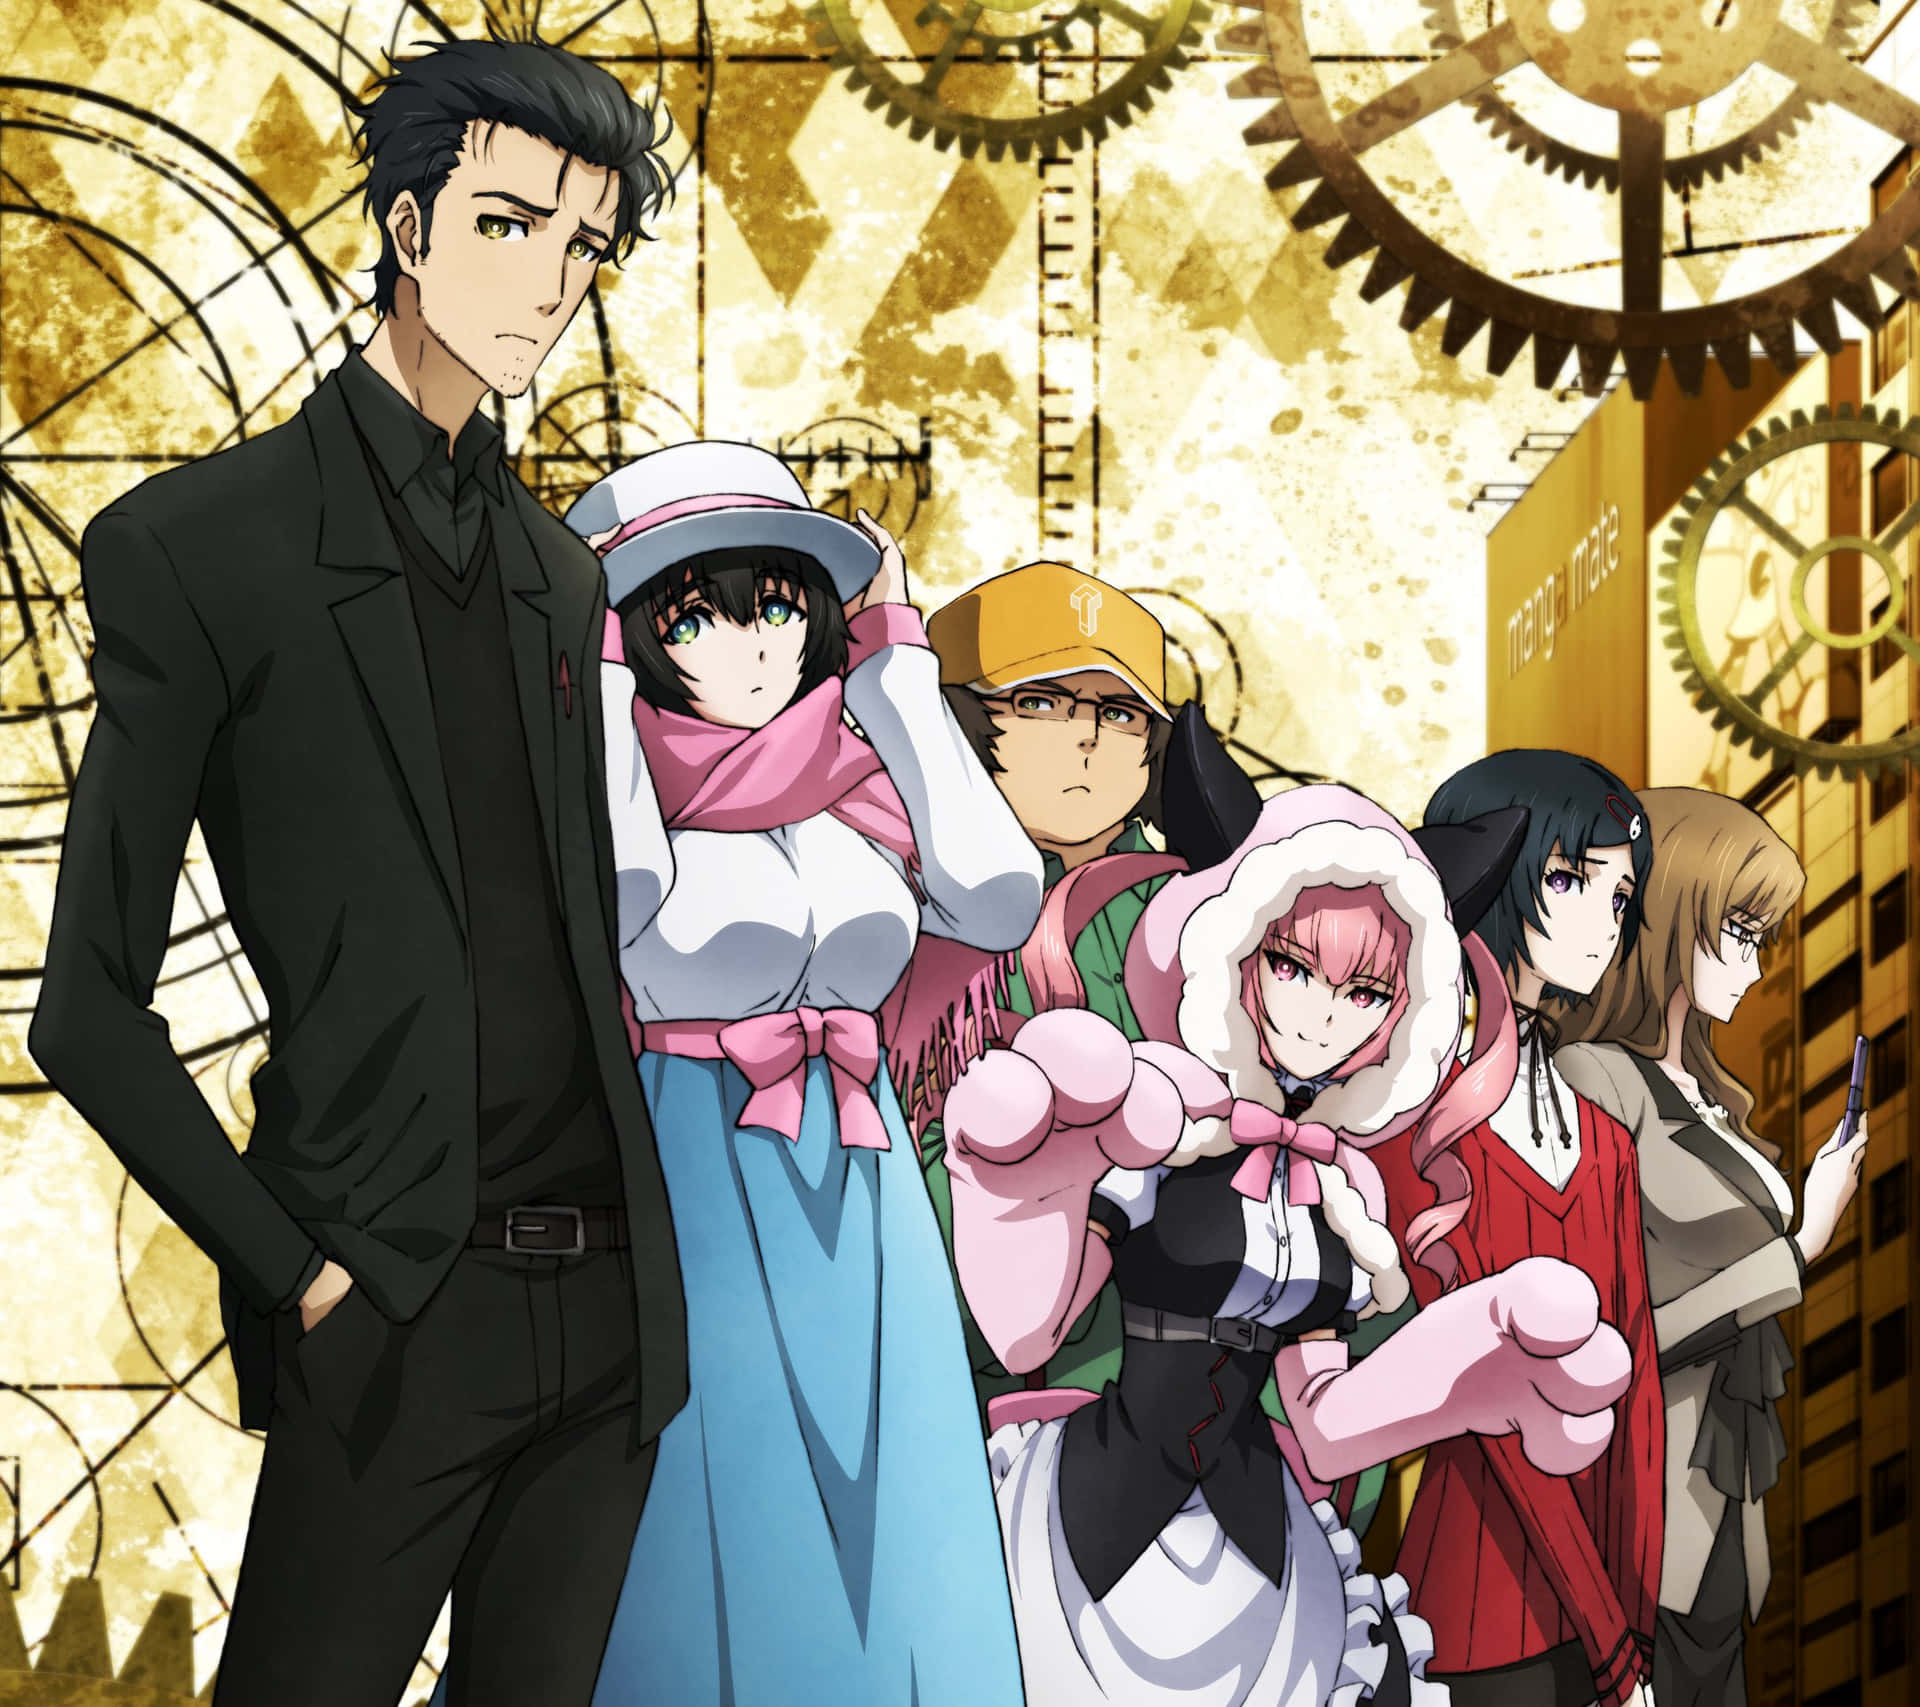 Umgrupo De Personagens De Anime Em Pé Na Frente De Um Relógio.